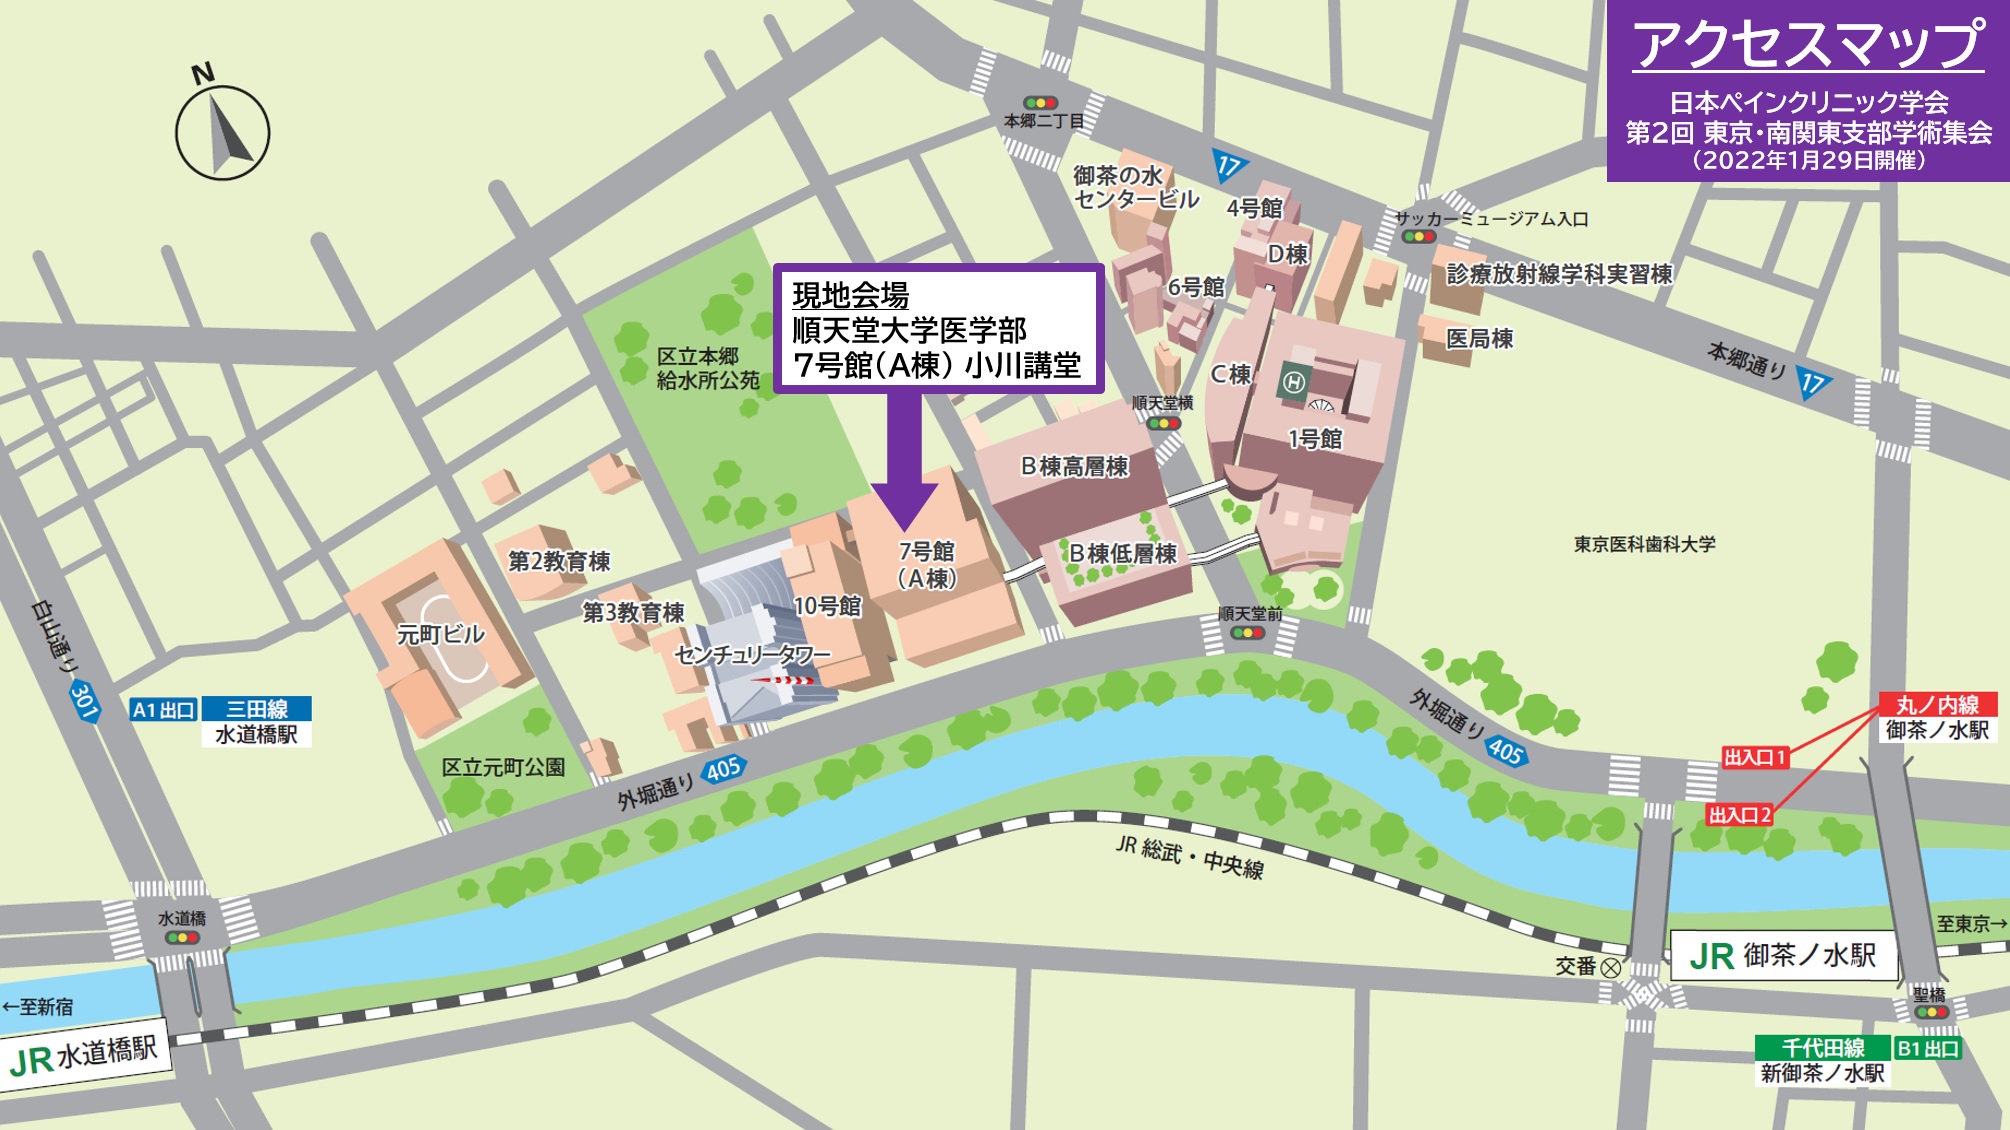 アクセスマップ＊近隣｜JSPC 第2回 東京・南関東支部学術集会（2022.1.29開催）